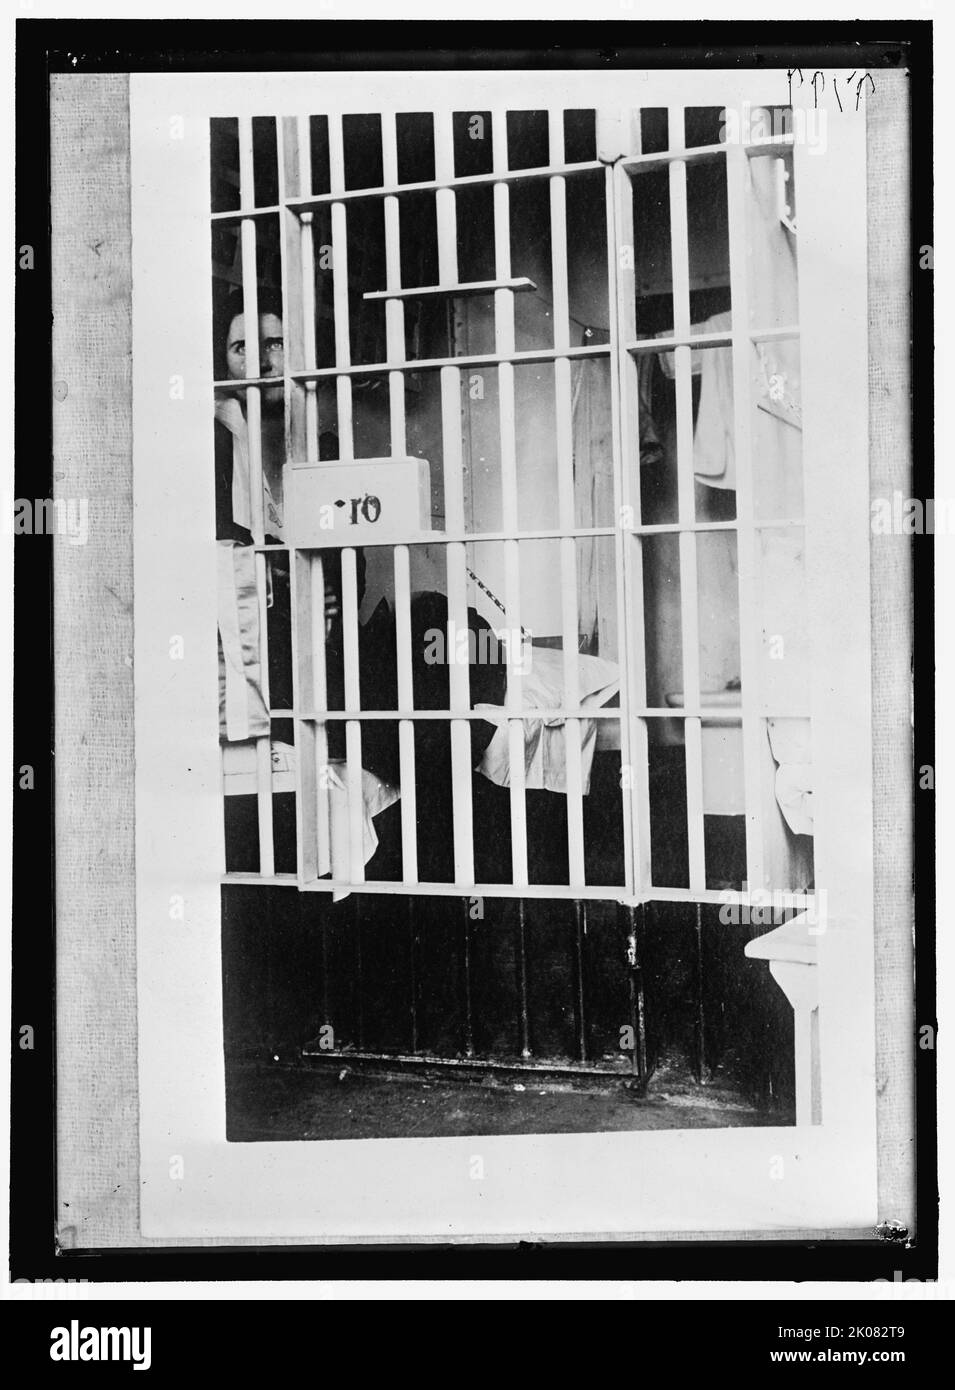 Frauenwahlrecht, Gefängniszelle, zwischen 1916 und 1918. Kämpferin hinter Gittern. Mit der Verabschiedung des Änderungsantrags von 19. erhielten Frauen in den Vereinigten Staaten 1920 das gesetzliche Stimmrecht. Stockfoto